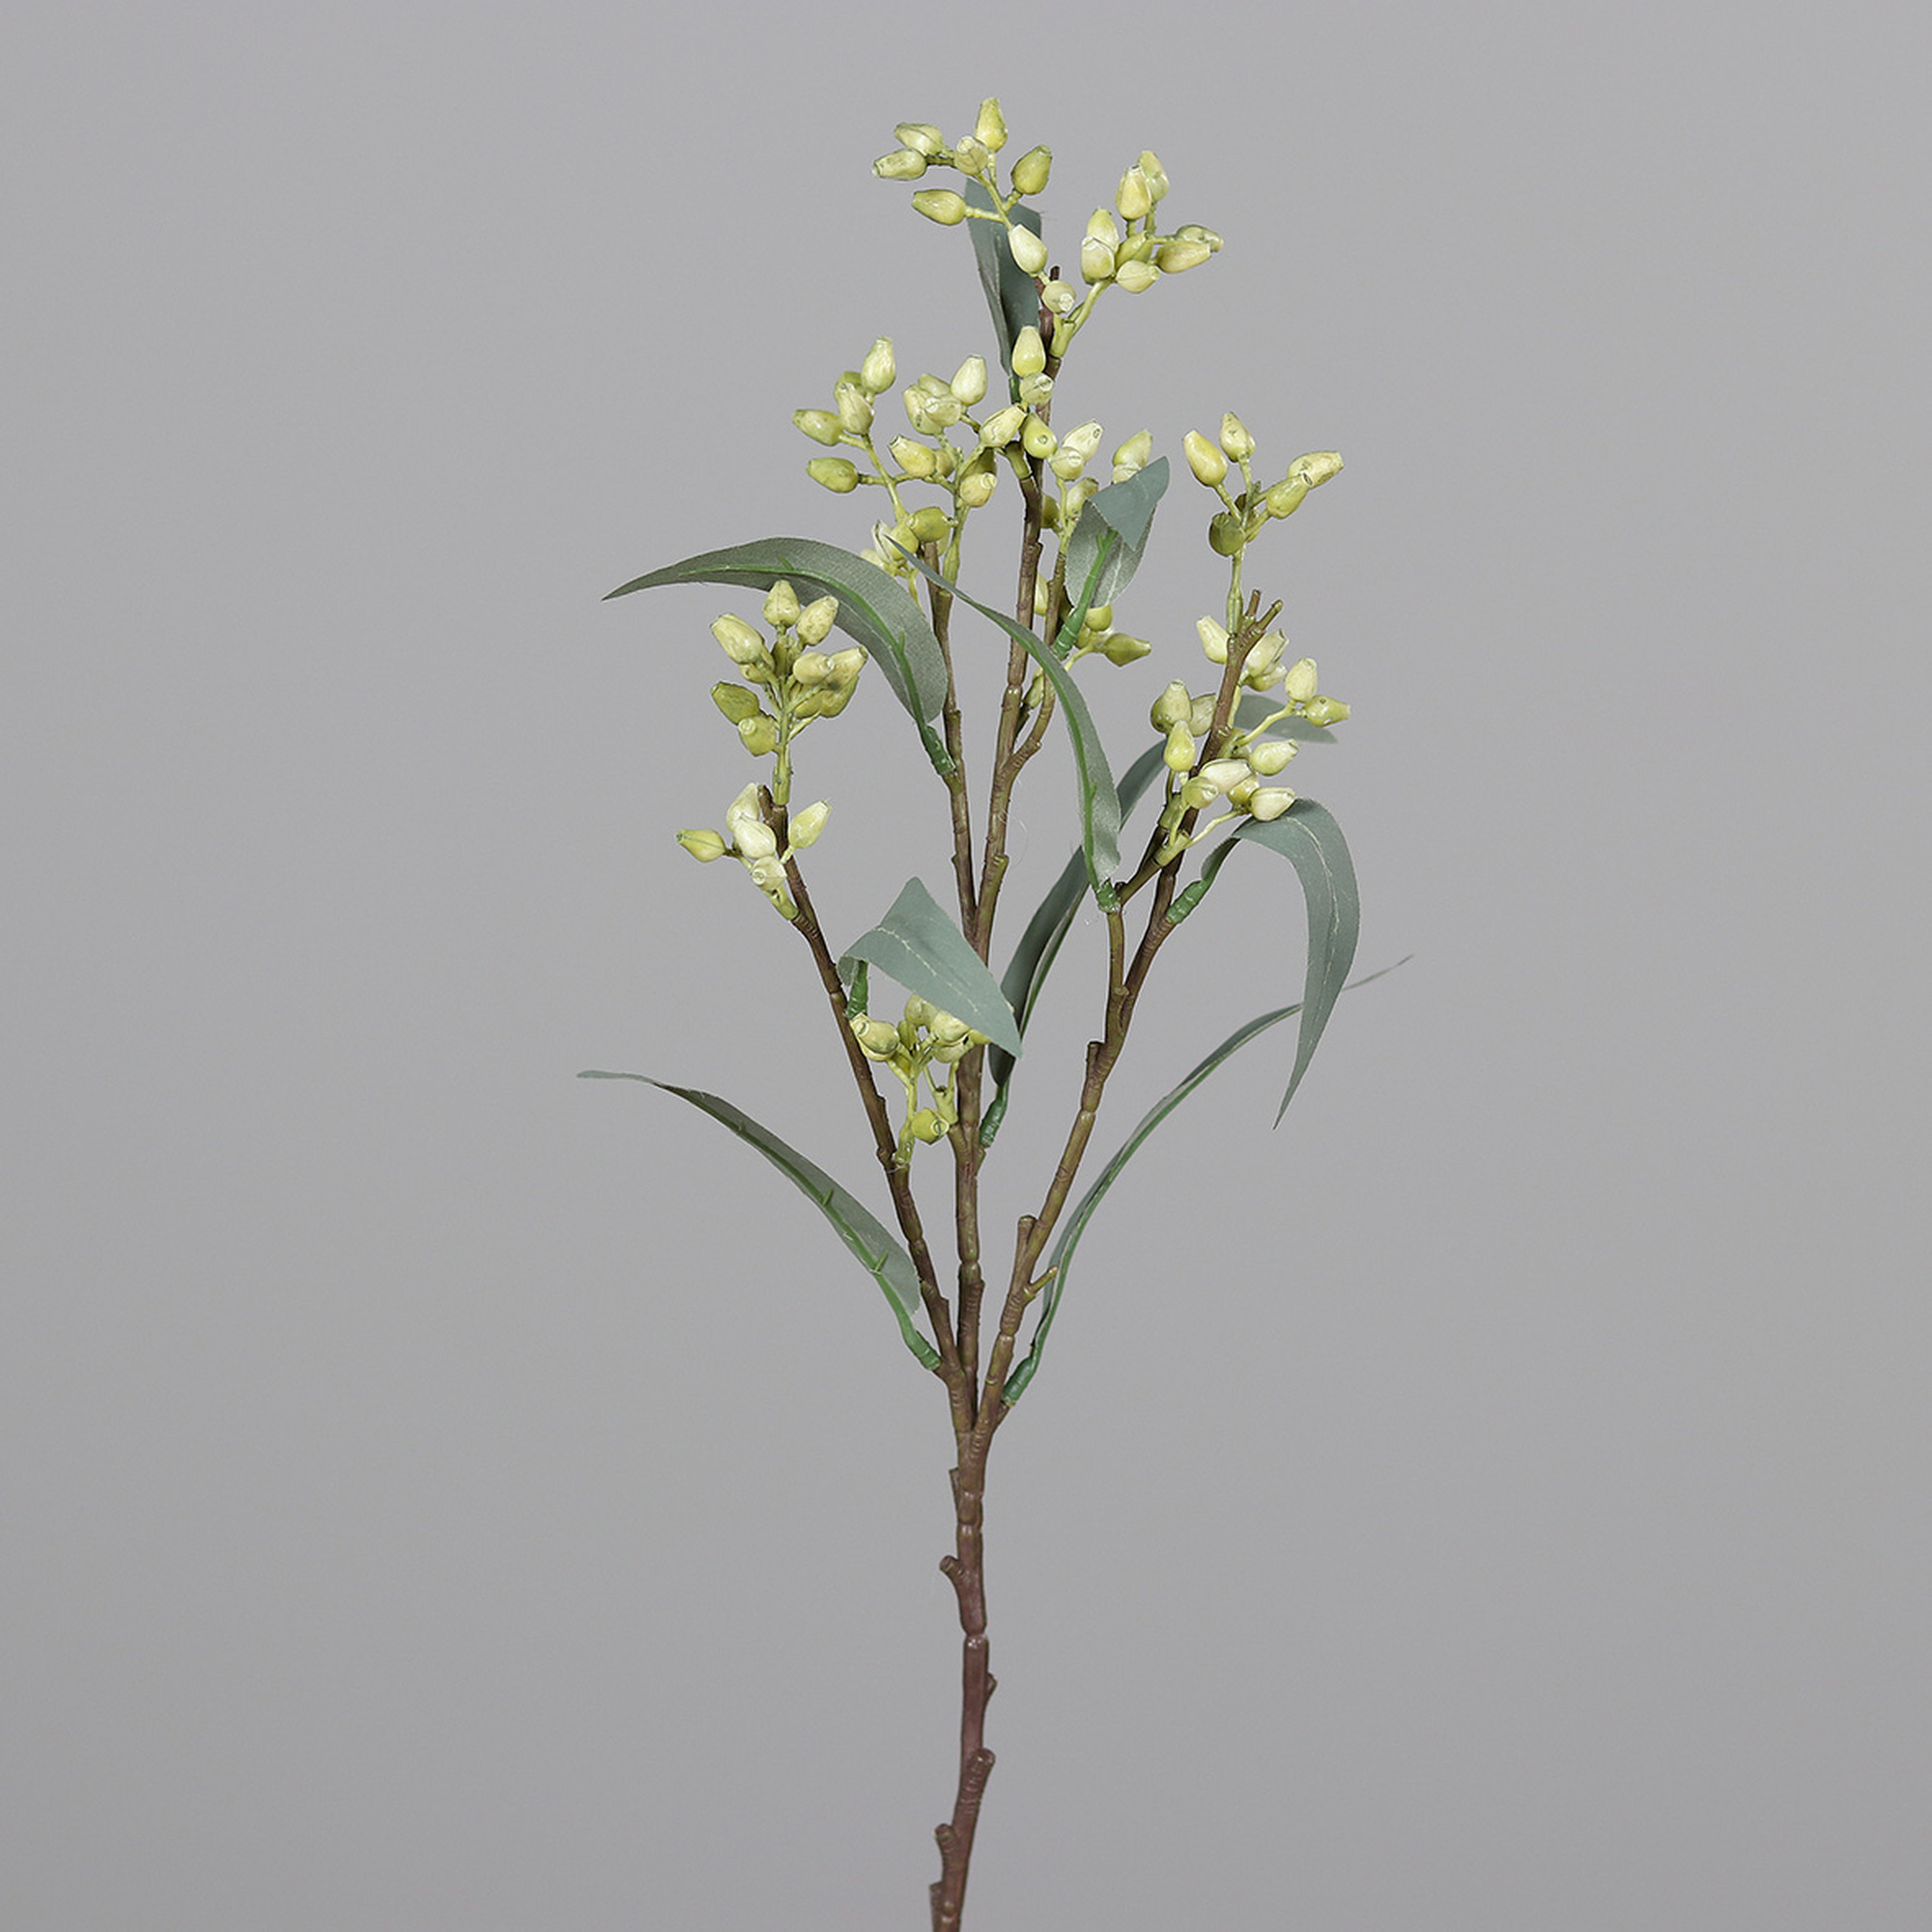 Eukalyptuszweig Blütenknospen 54cm grün DP Kunstblumen künstlicher Eukalyptus Zweige Blumen